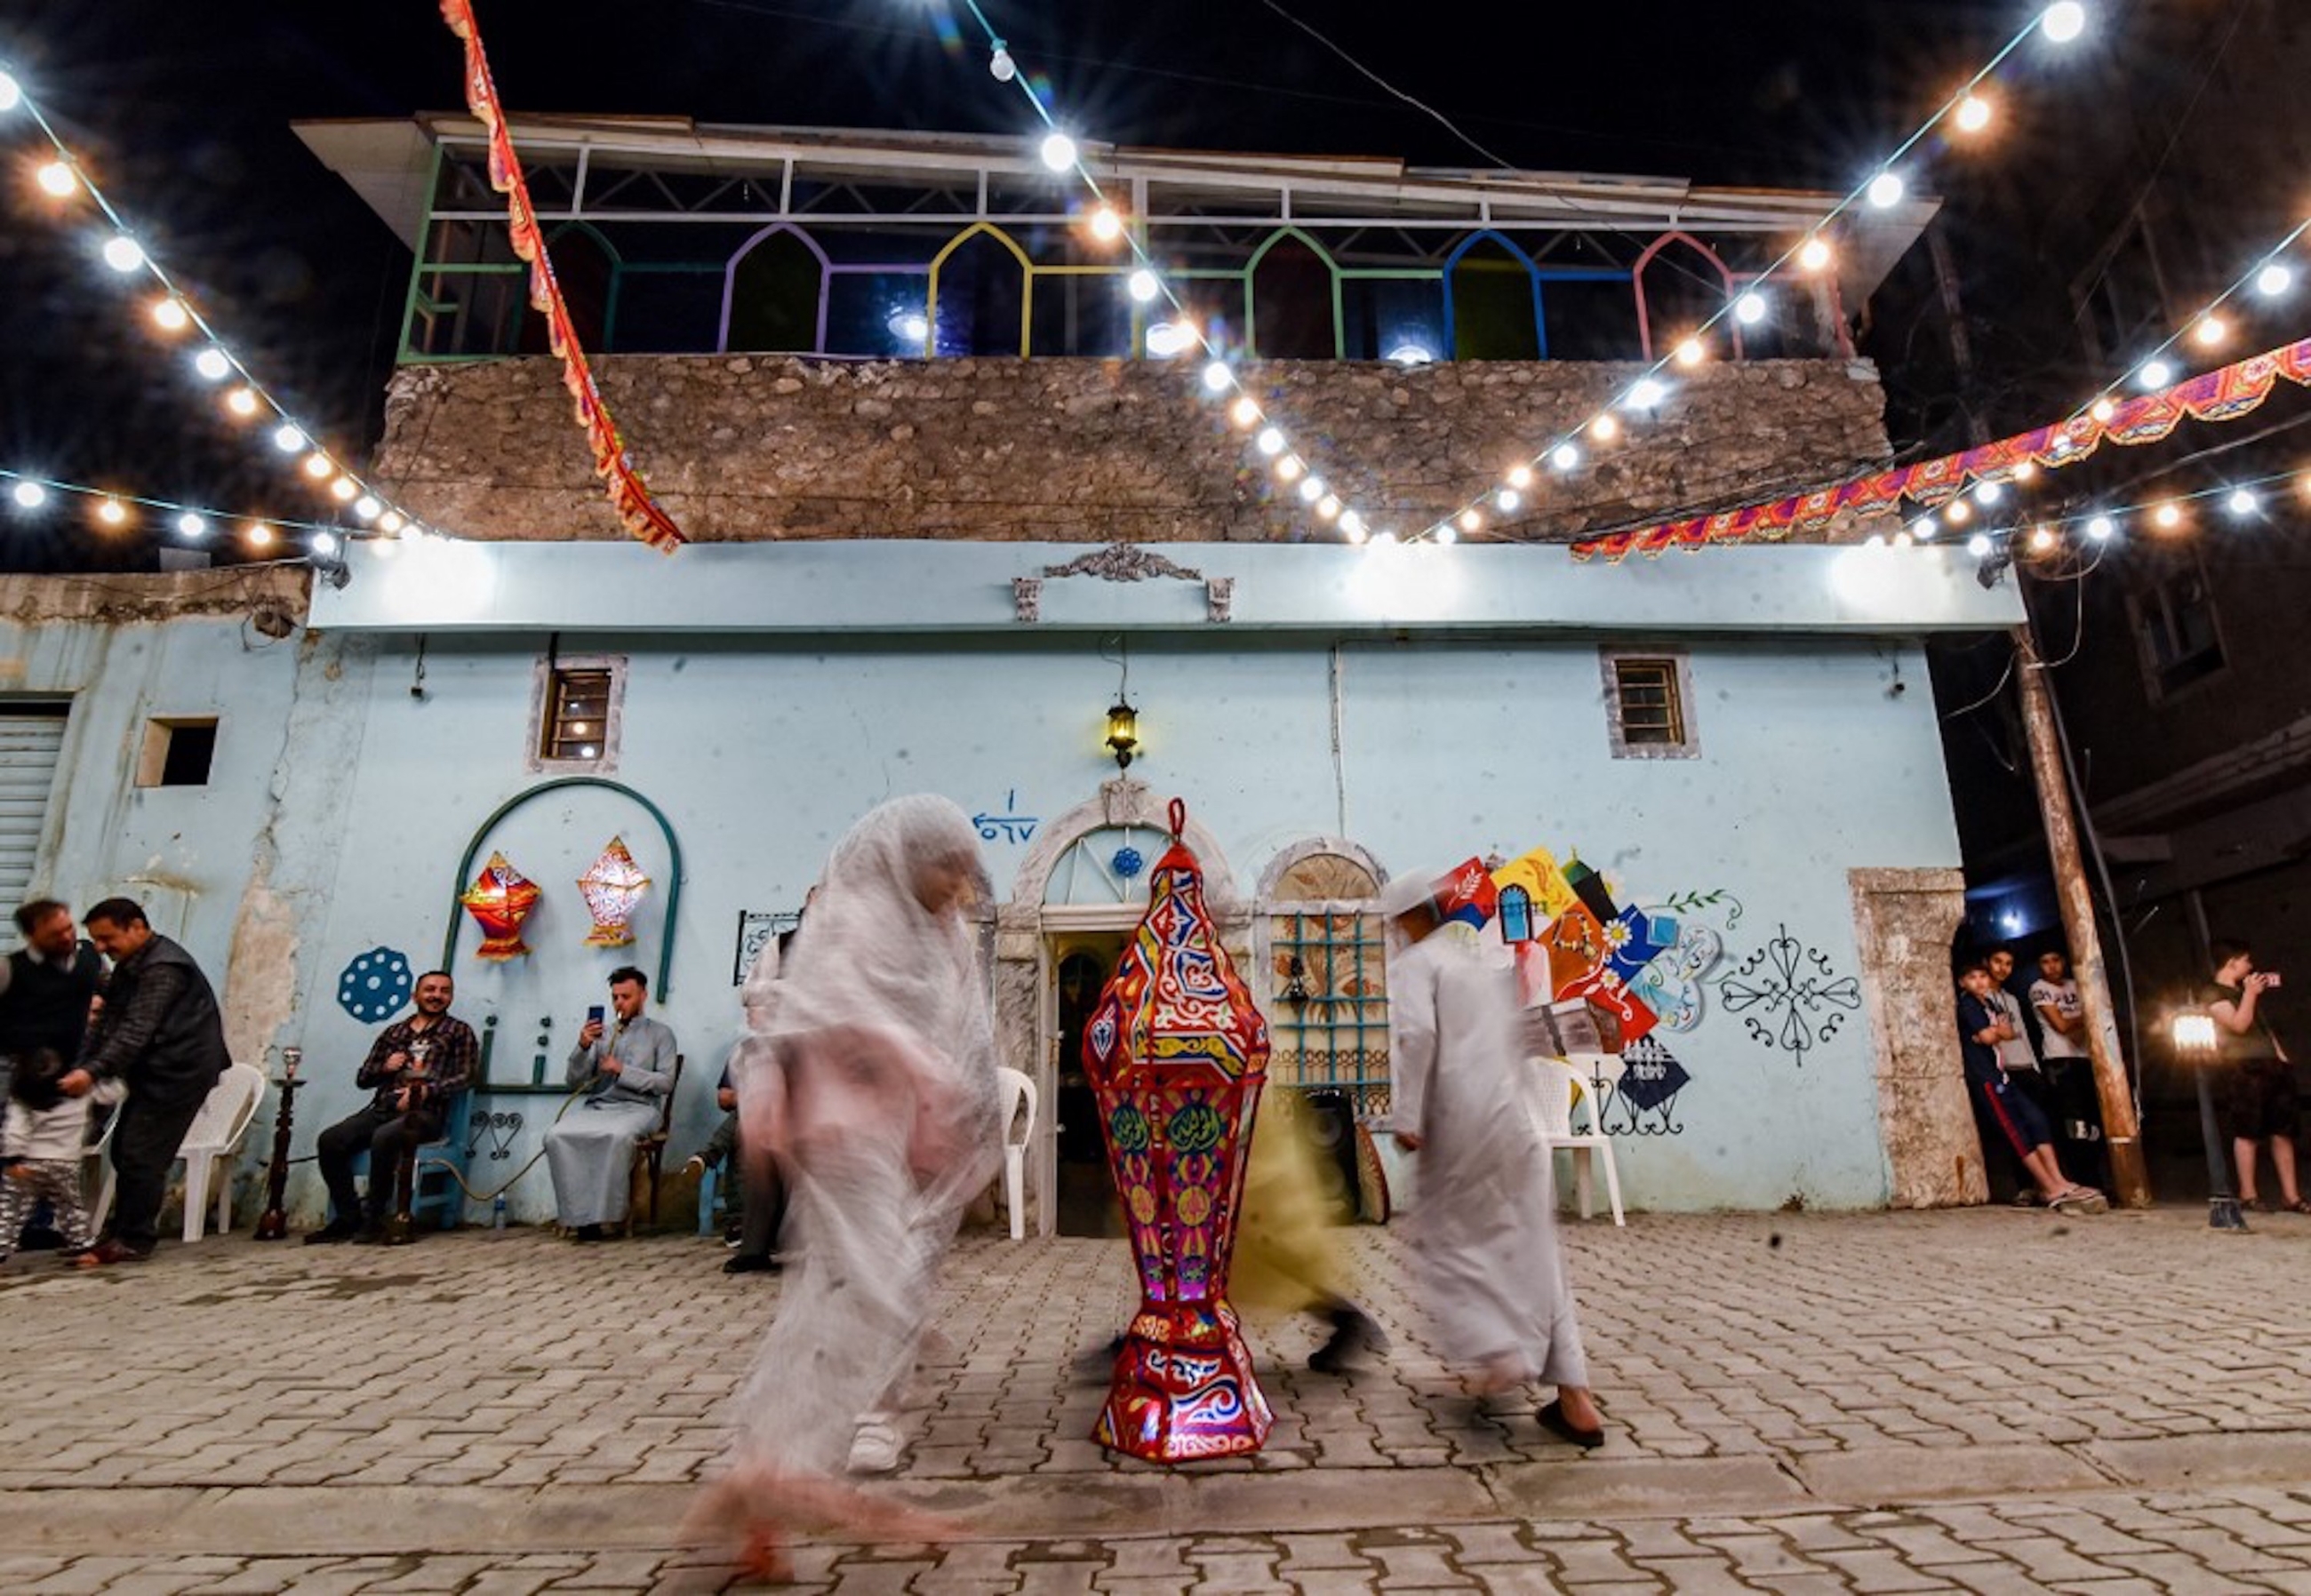 IRAK. Des enfants dansent autour d’une lanterne lors d’une fête de rue organisée par une ONG culturelle locale lors de la première nuit du Ramadan dans la vieille ville de Mossoul, le 13 avril 2021 (AFP)